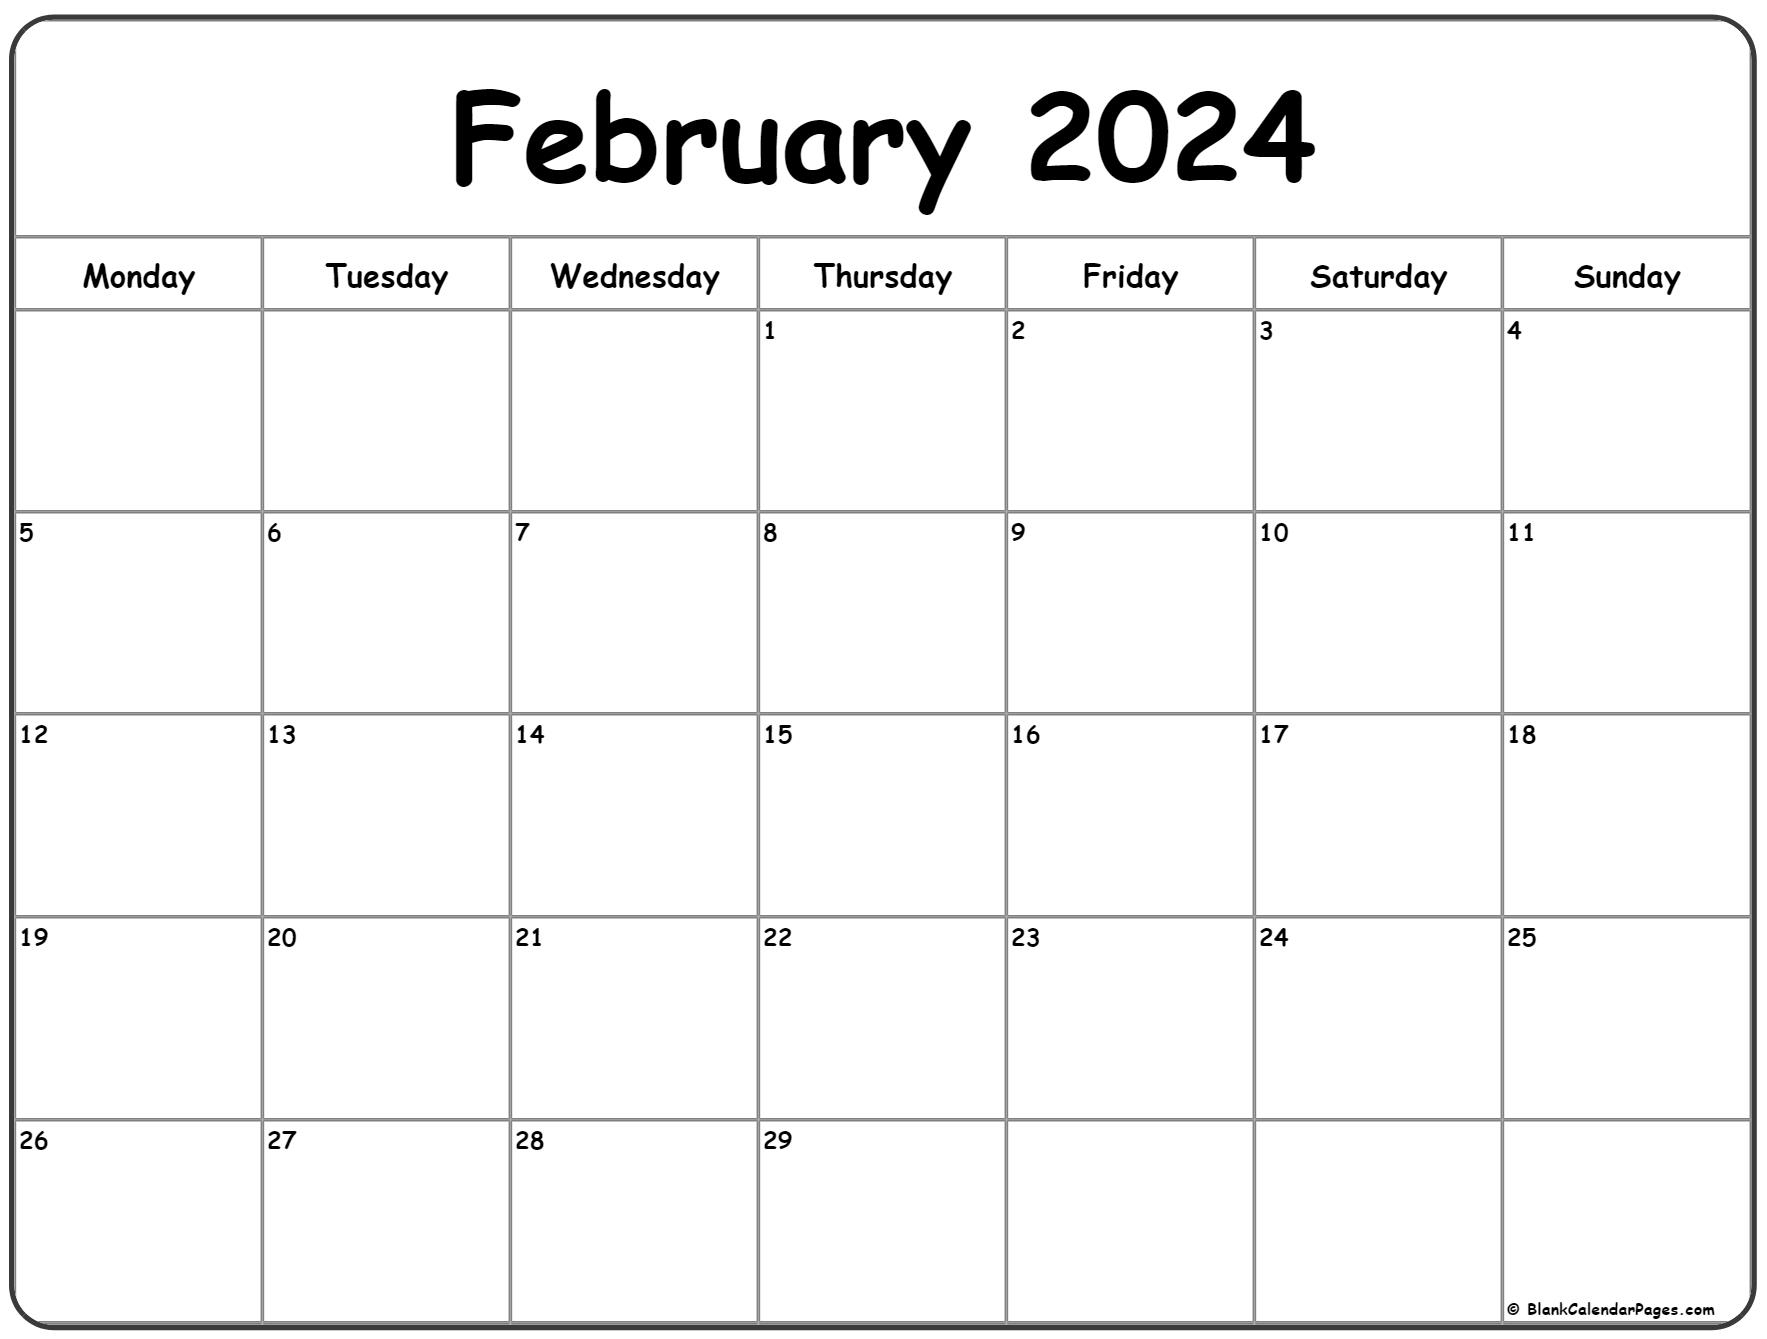 February 2024 Monday Calendar | Monday To Sunday for Feburary 2024 Printable Calendar